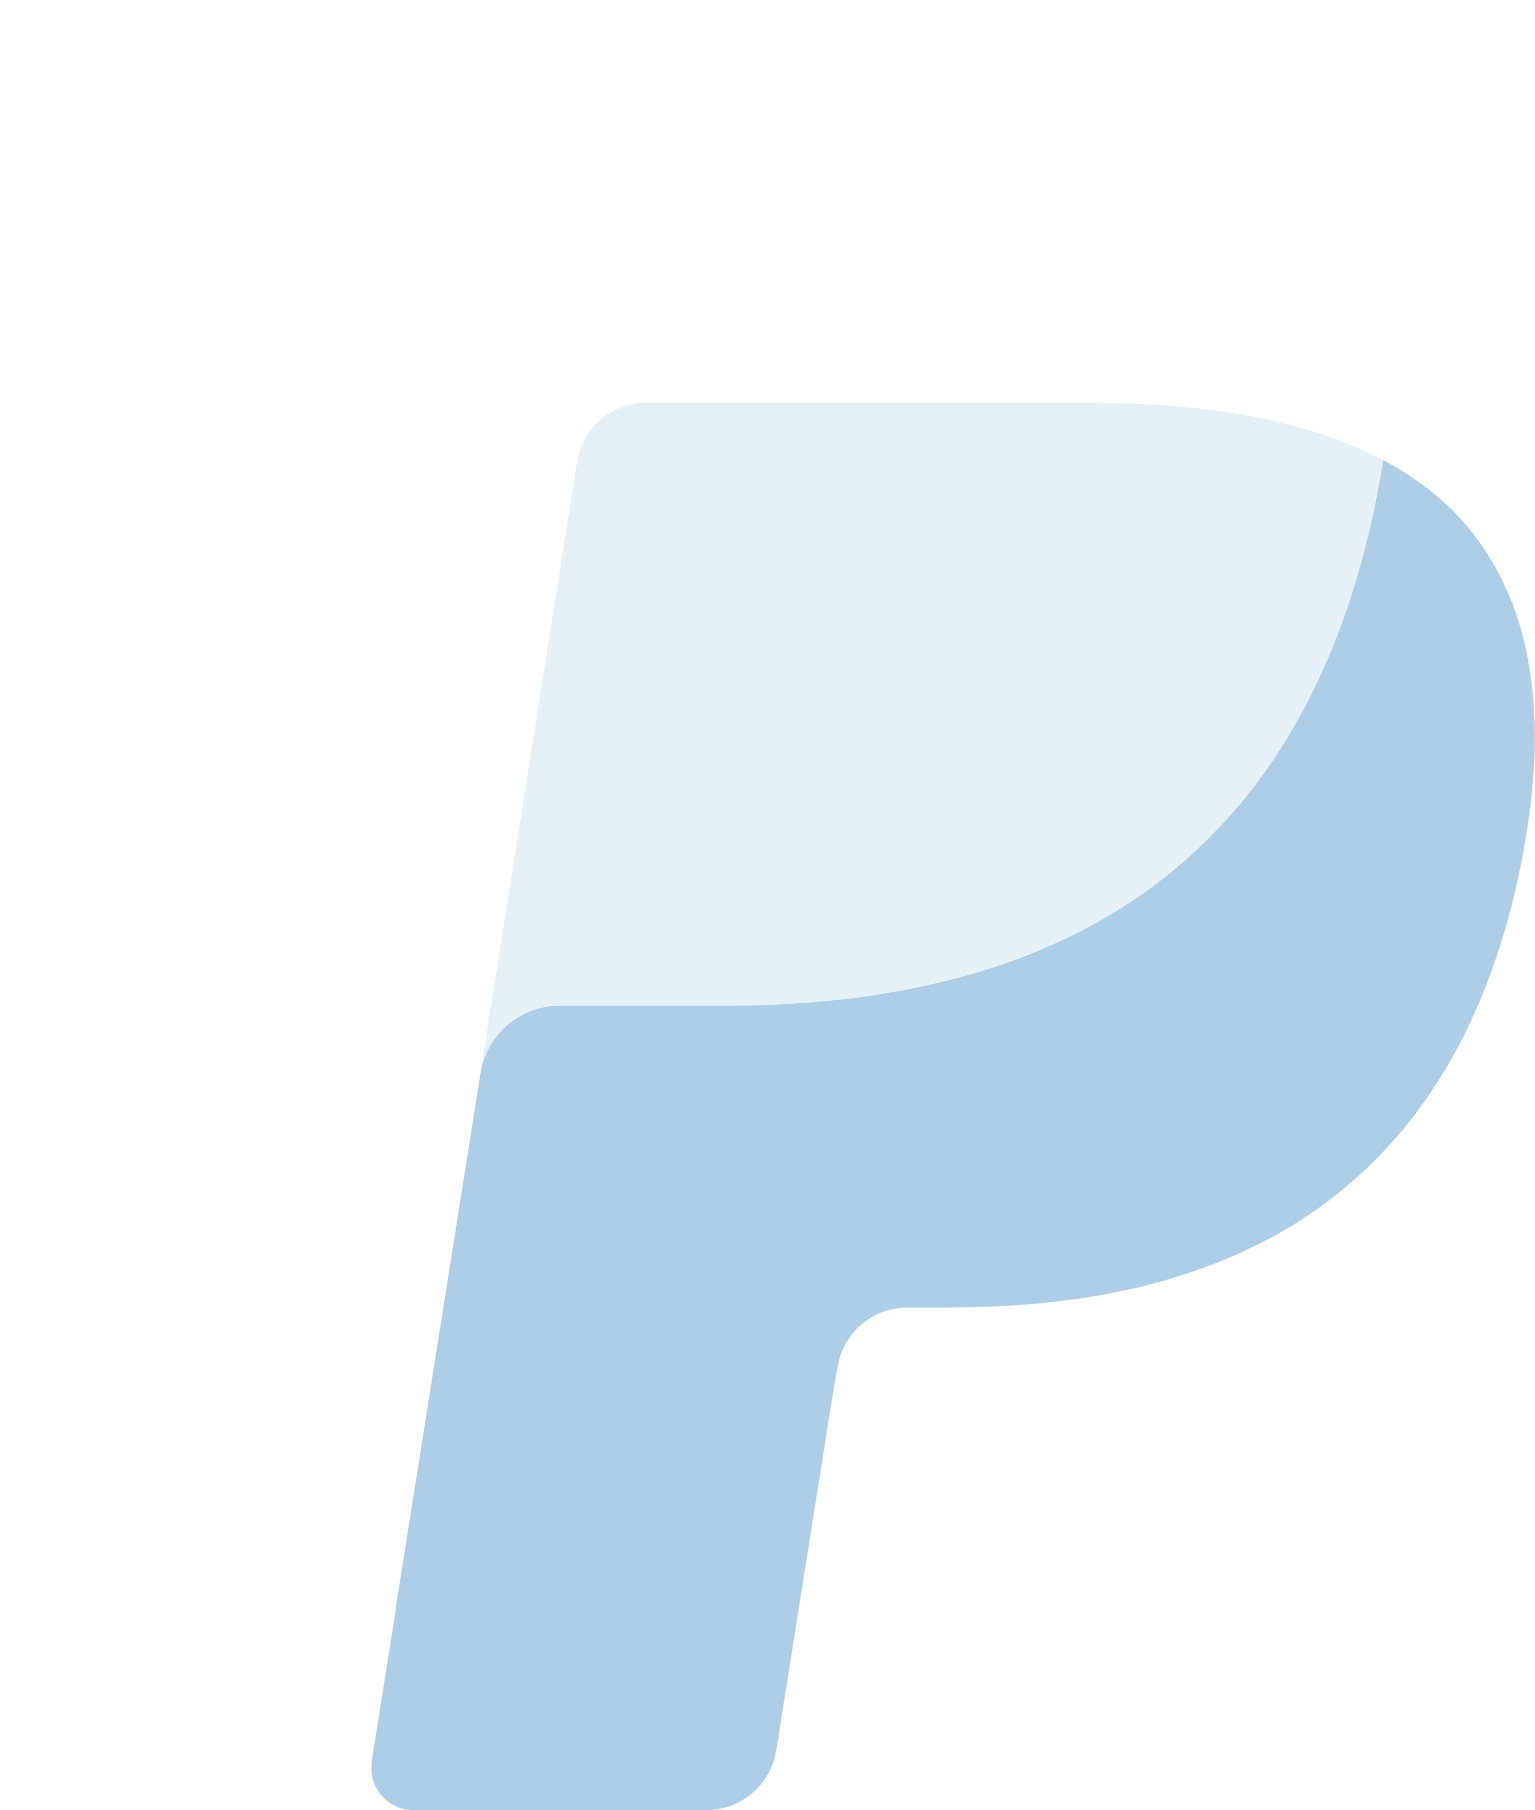 PayPal logo pour fonds sombres (PNG transparent)